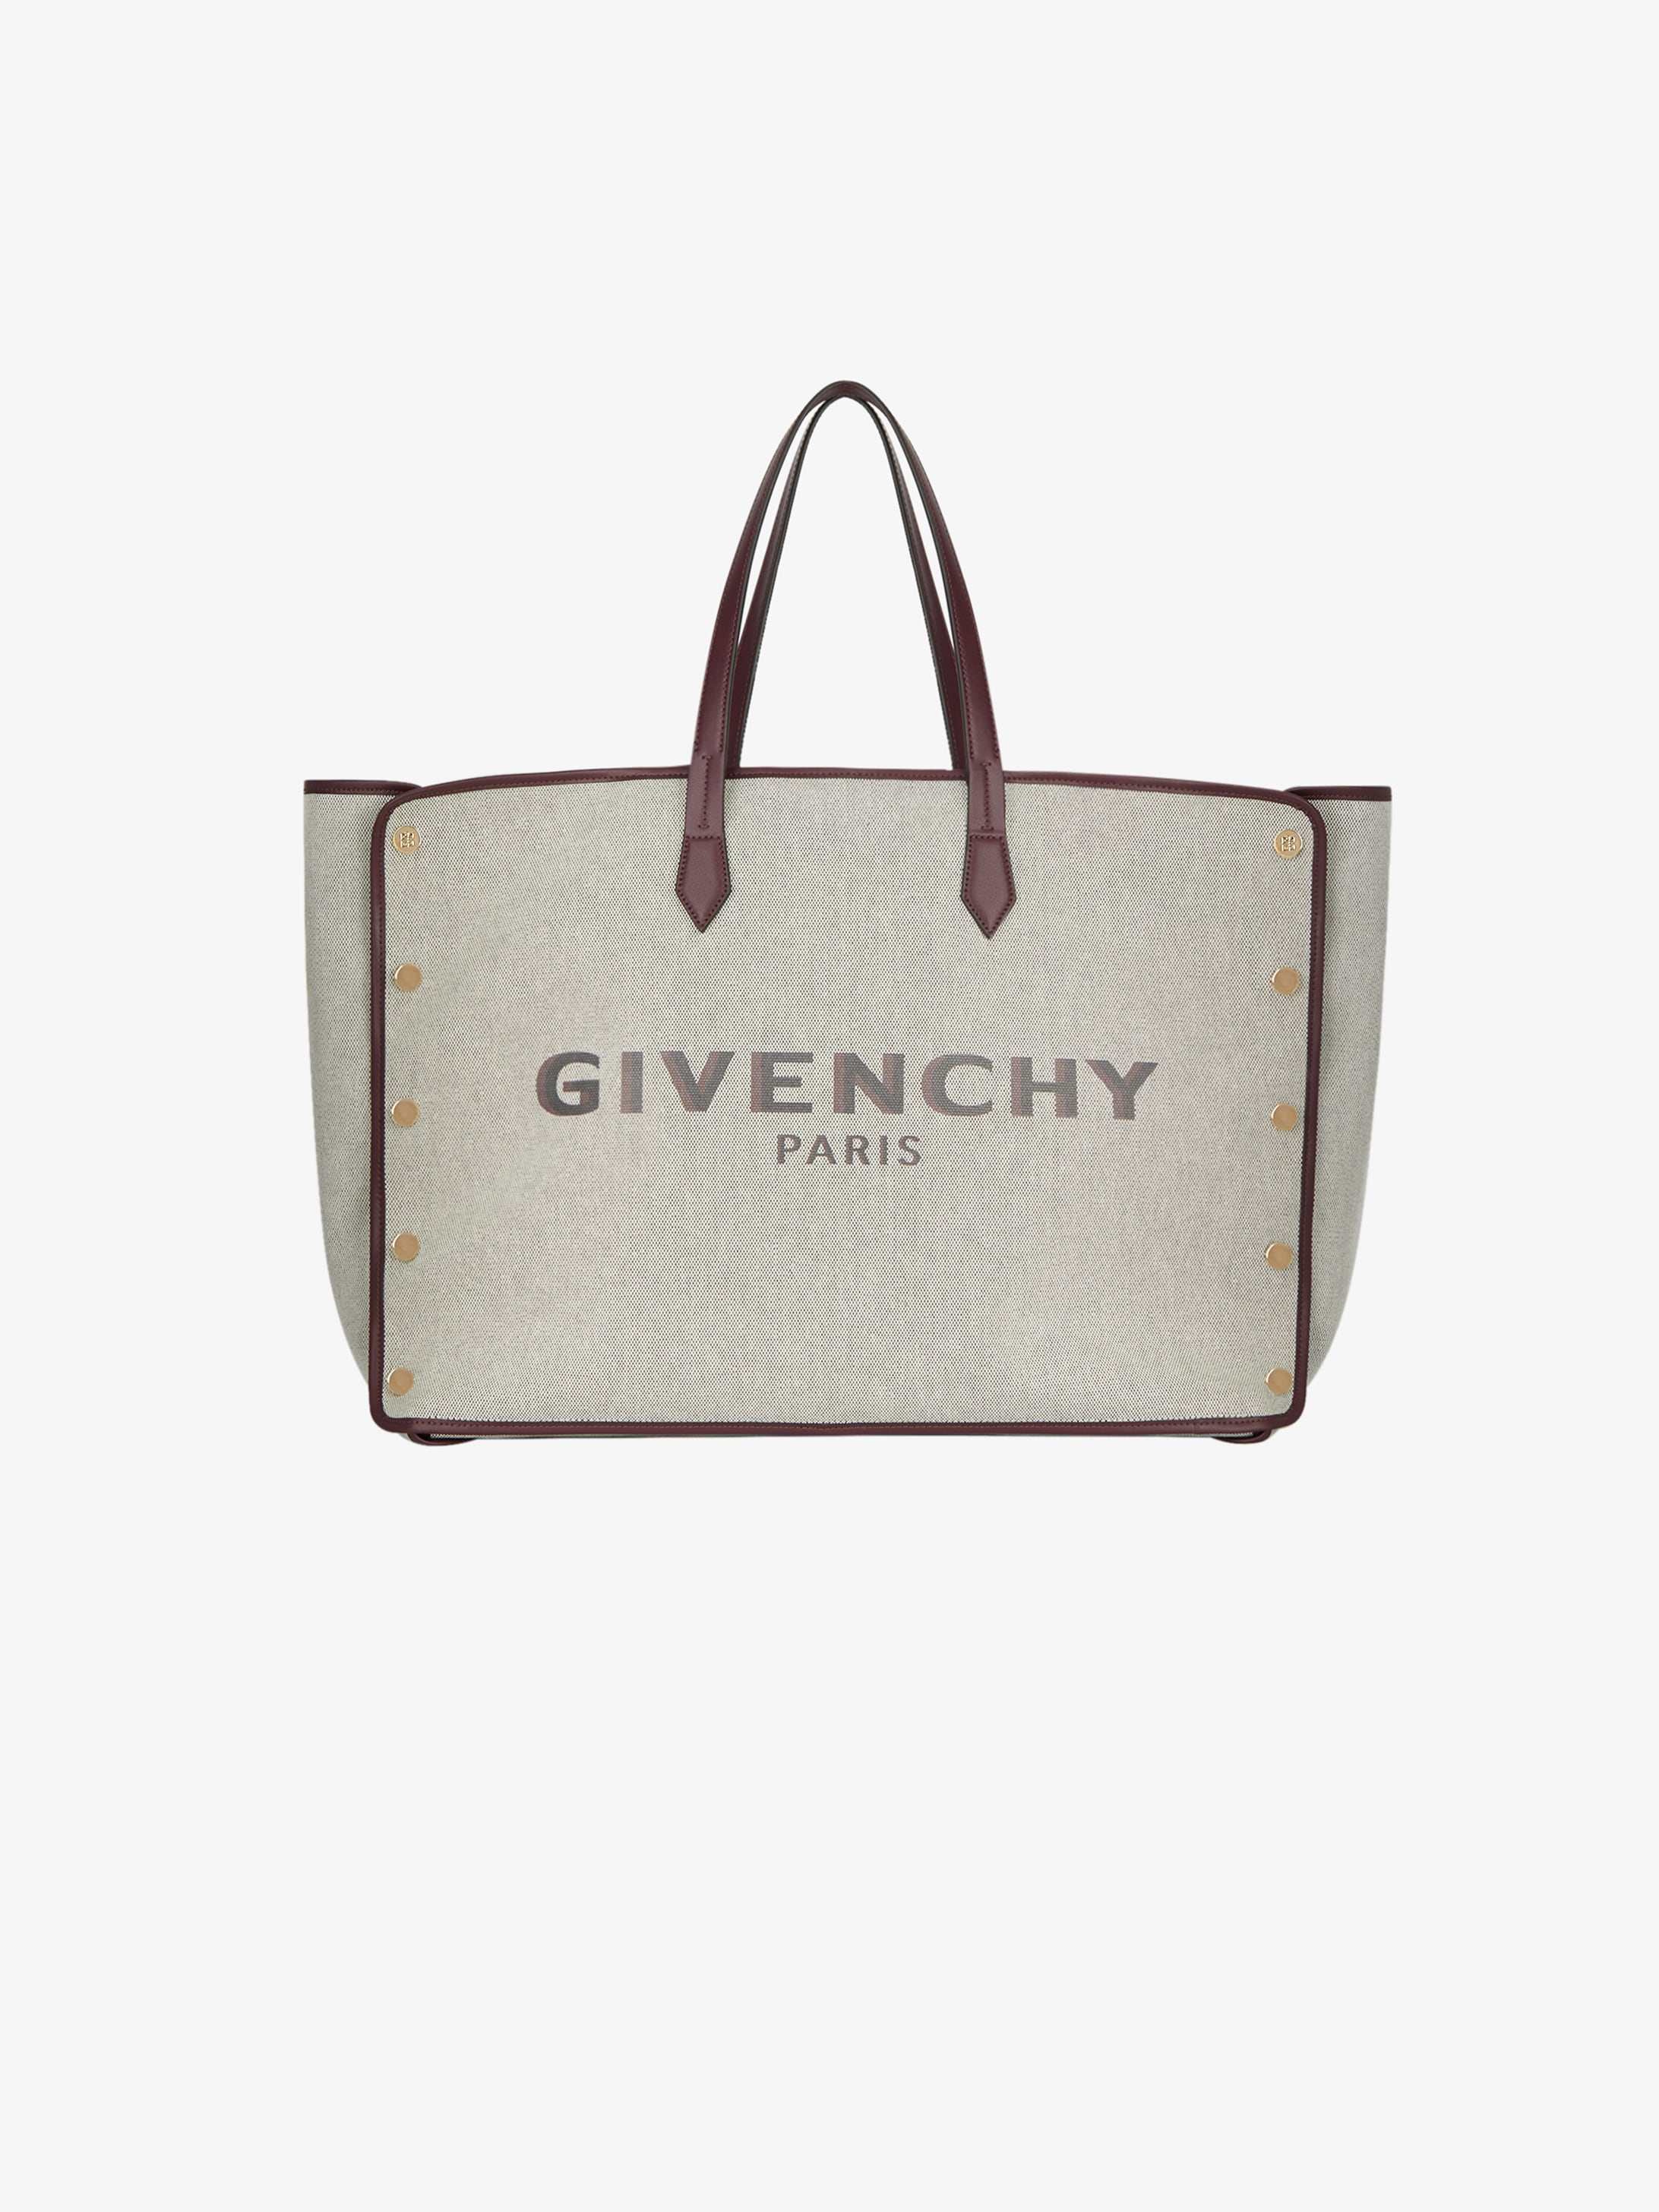 givenchy tote handbags